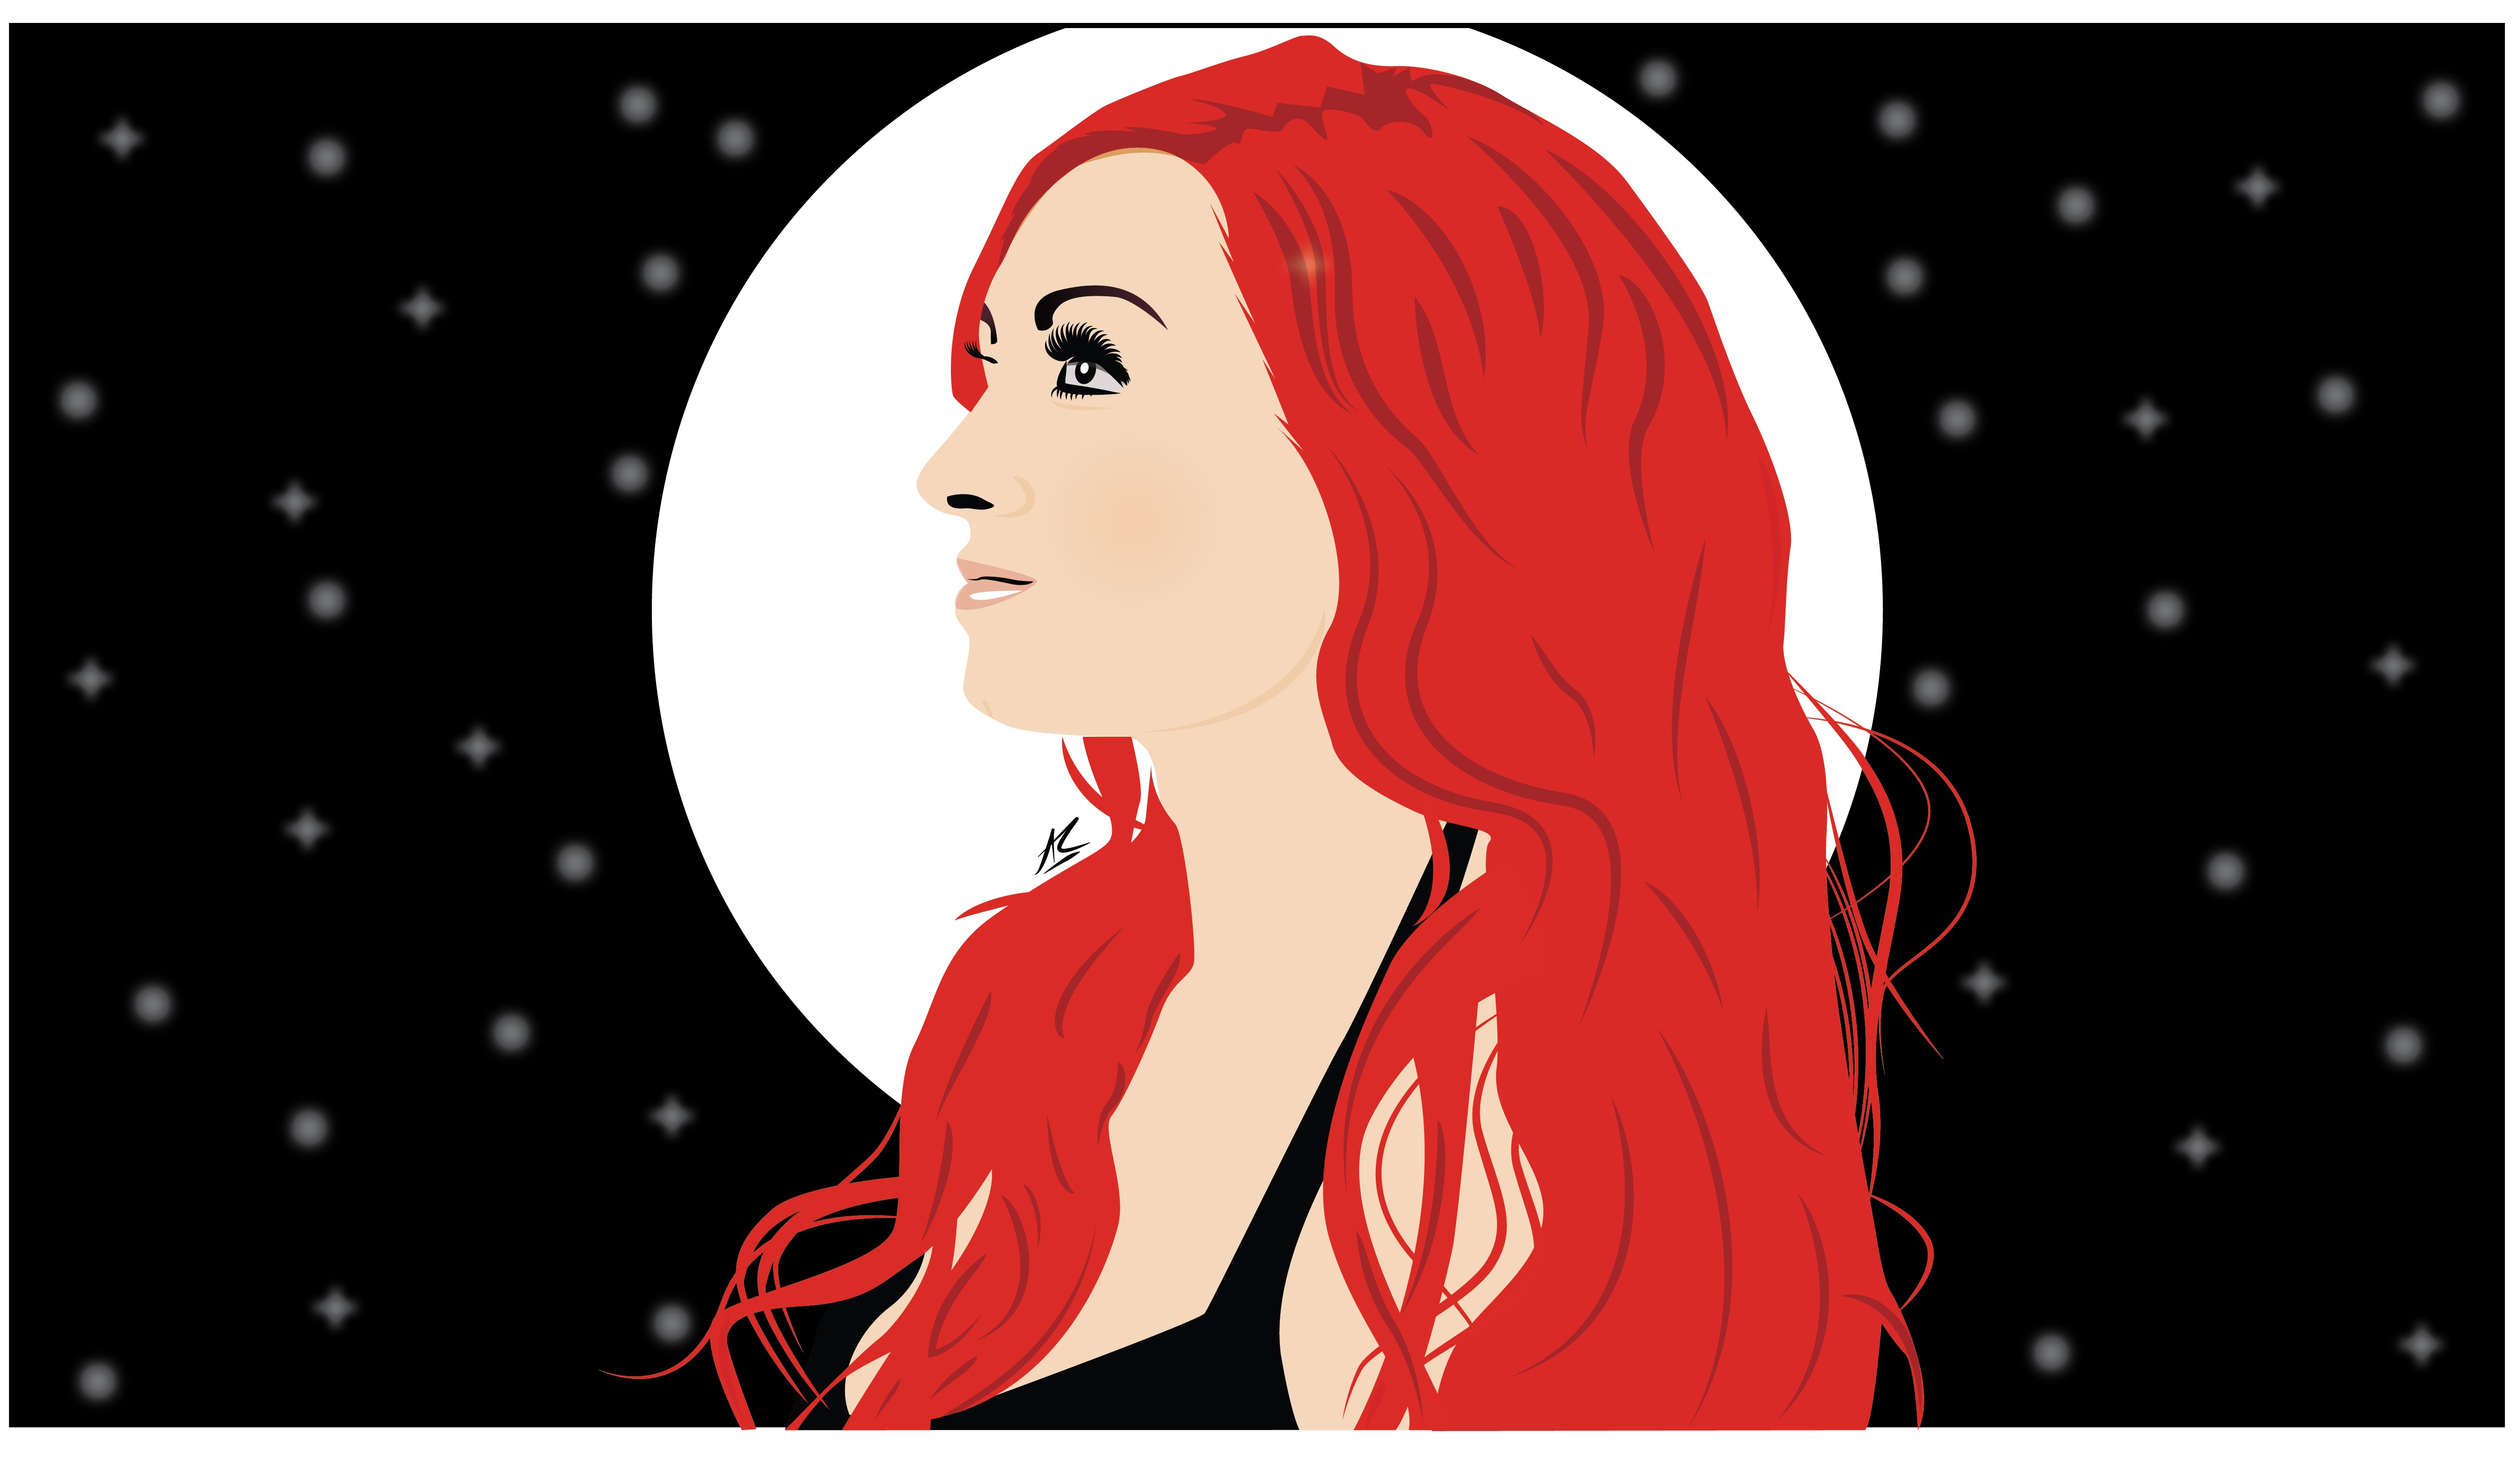 redhead, Vector, Black background, Moonlight, Moonlight Lady, Star trails, Illustration Wallpaper